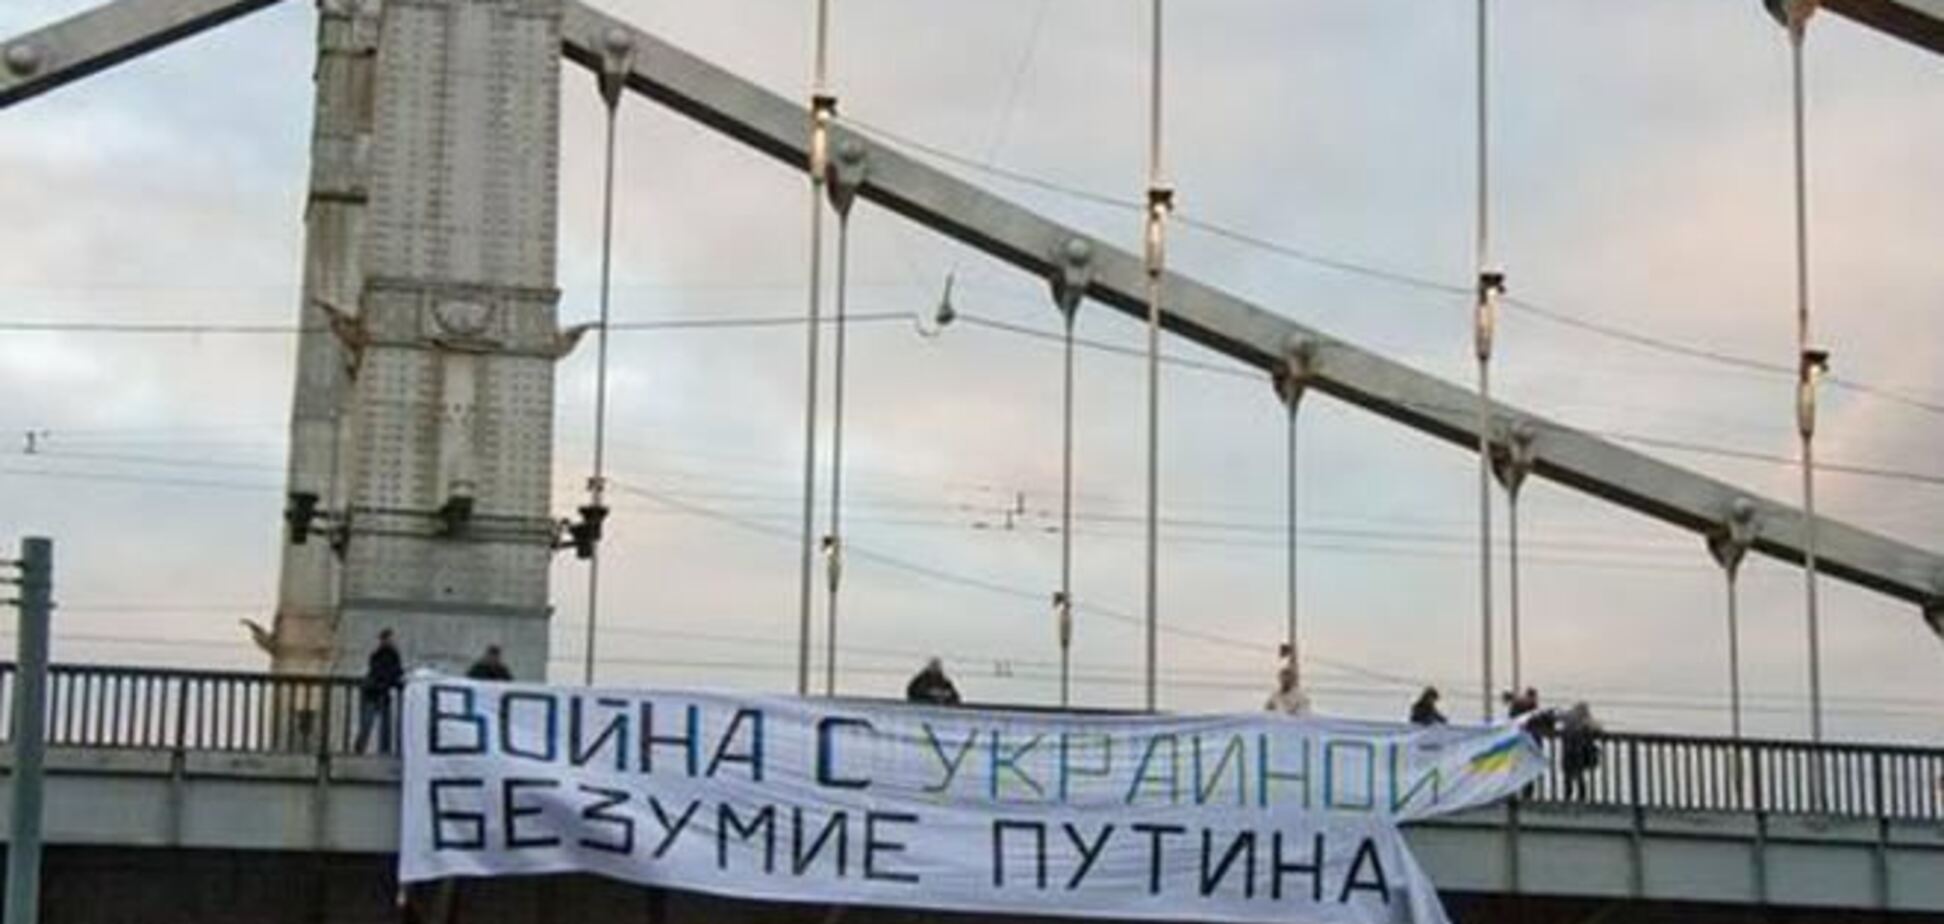 В центре Москвы появился баннер 'Война с Украиной – безумие Путина'